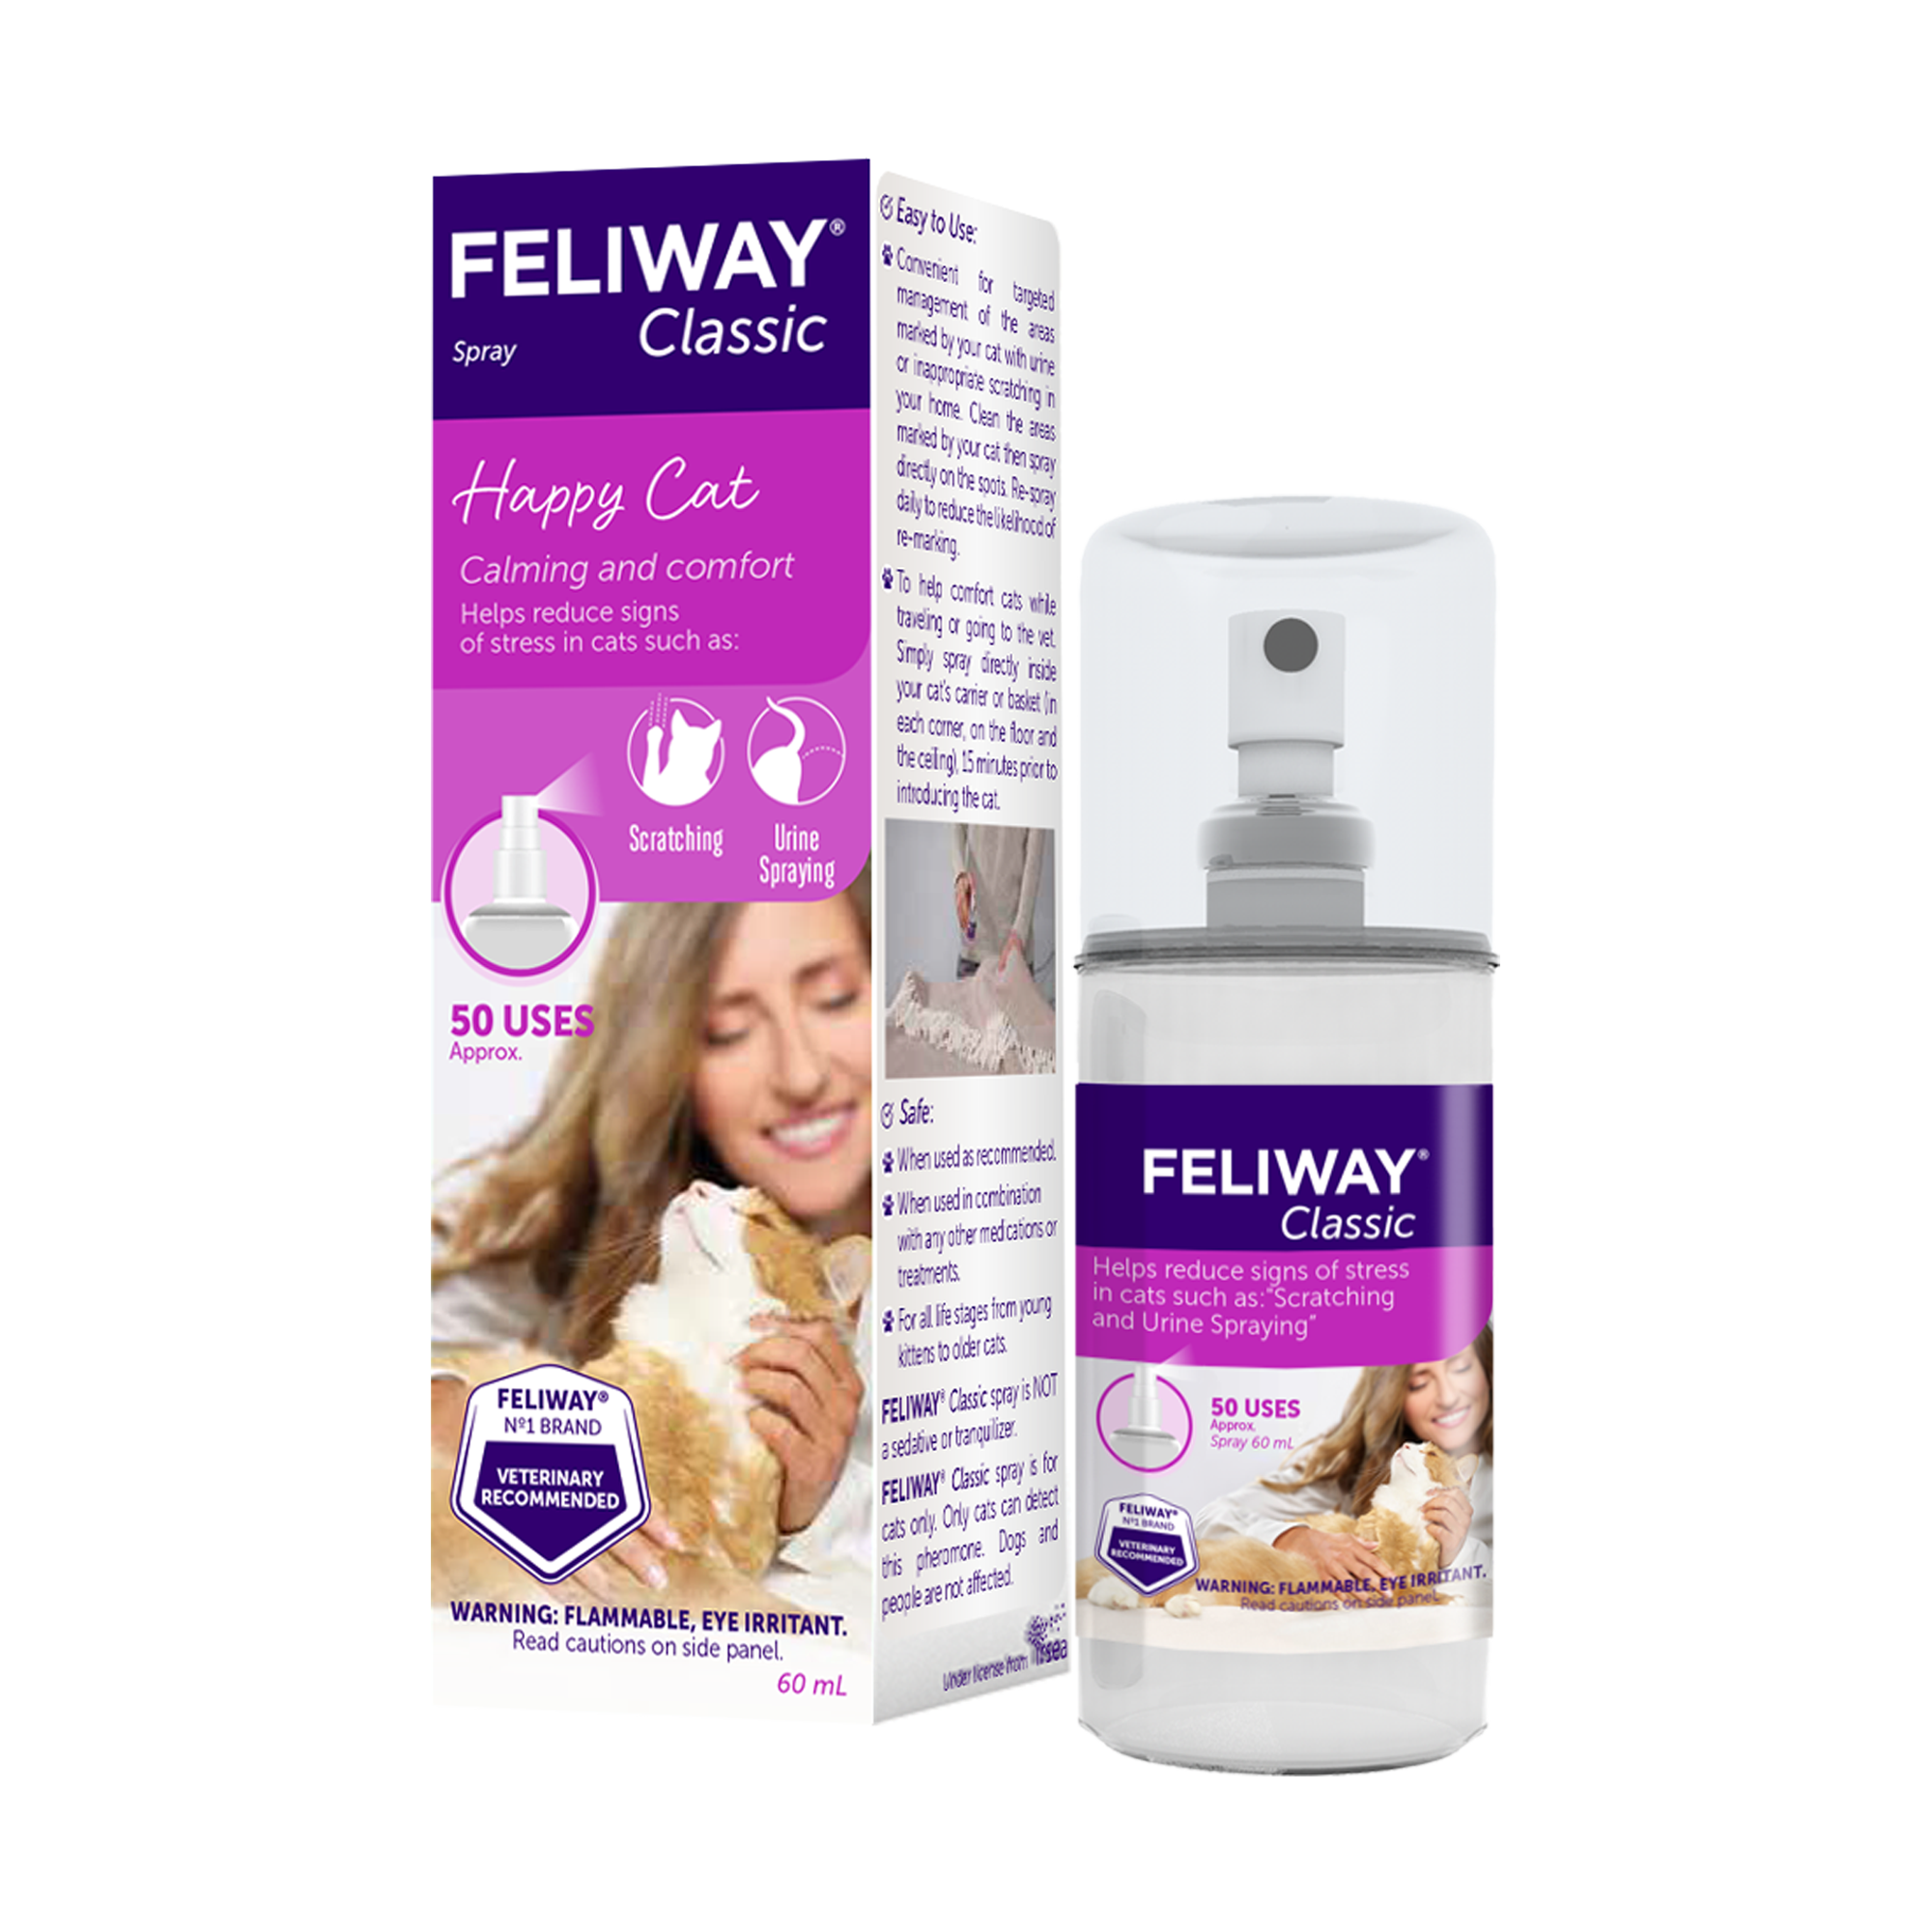 FELIWAY Optimum Cat - Difusor de feromonas calmante mejorado, kit de inicio  de 30 días (1.6 fl oz), translúcido